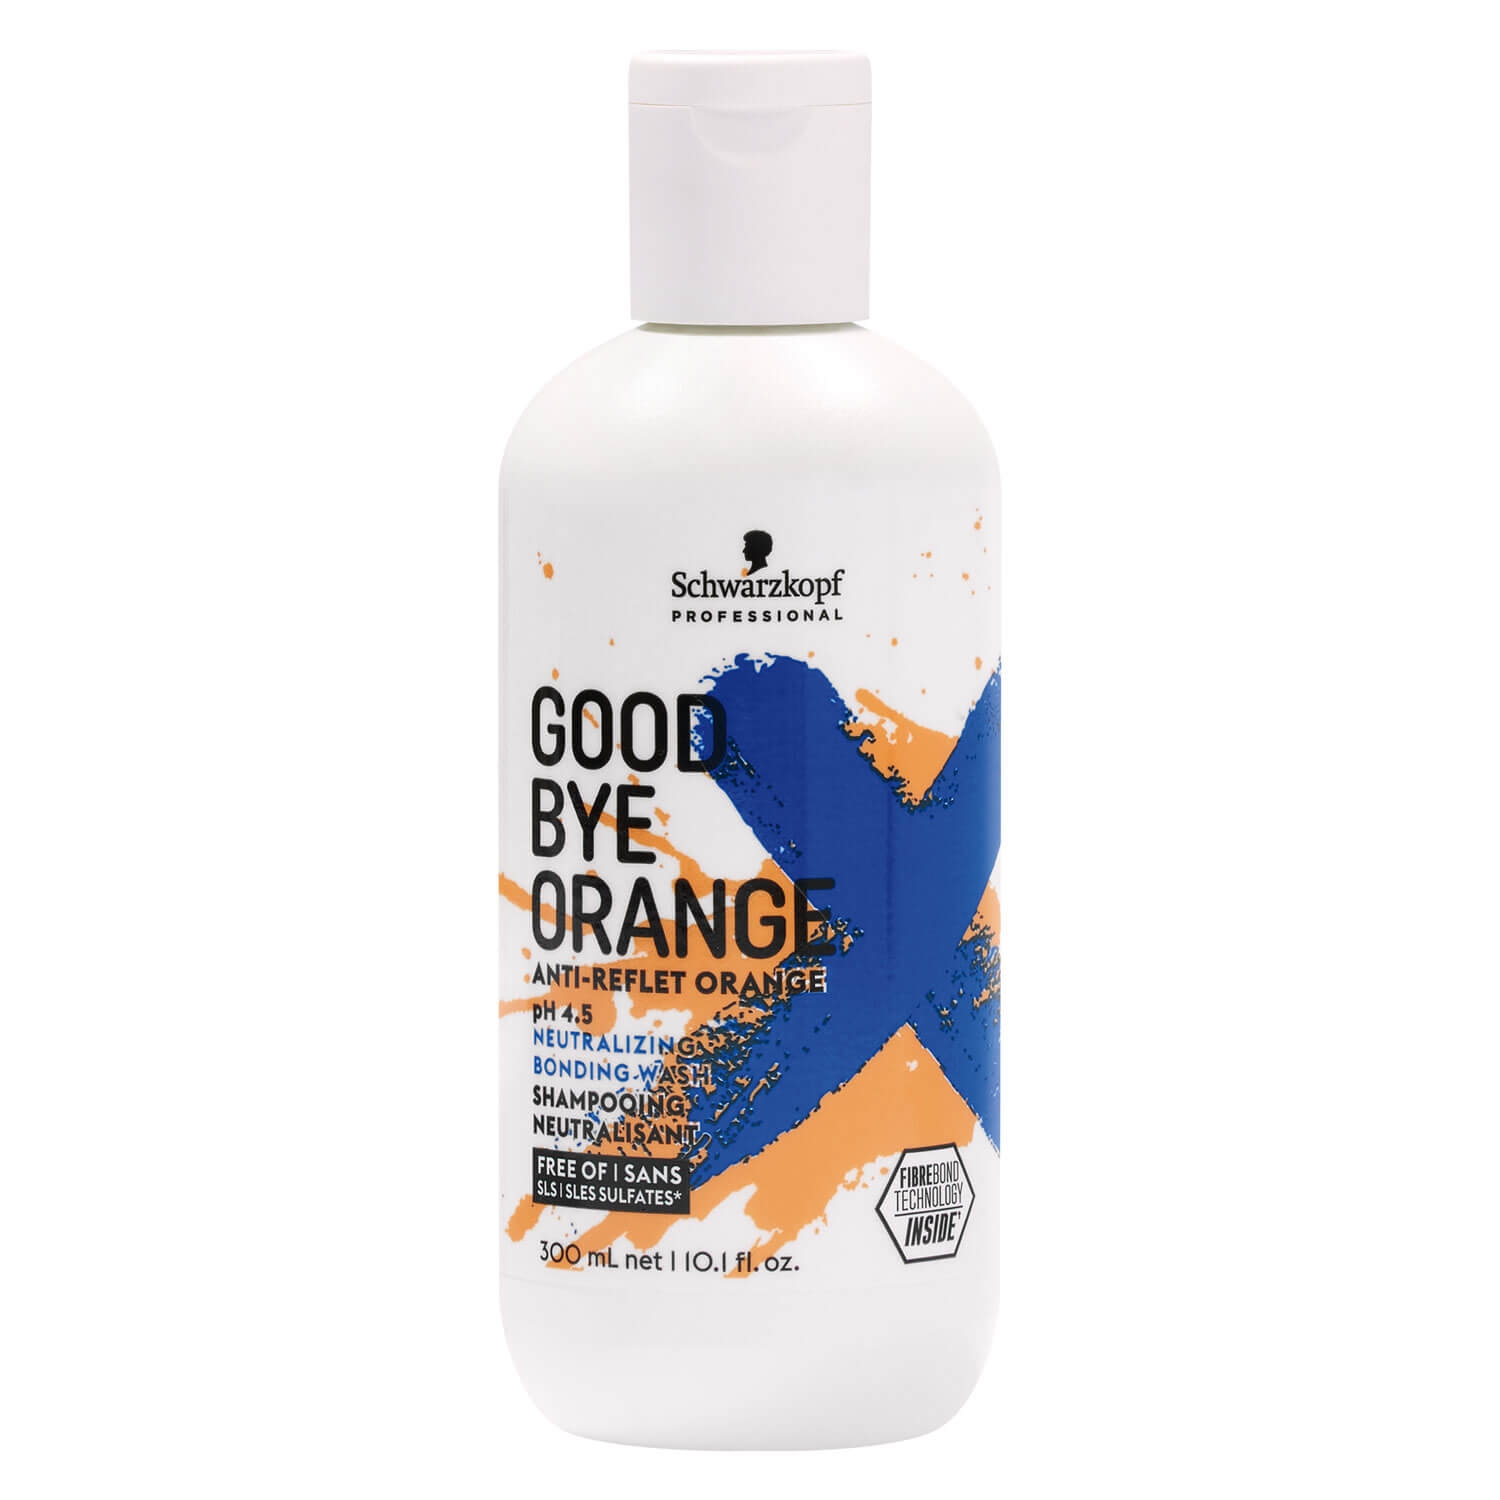 Produktbild von Goodbye - Orange Shampoo